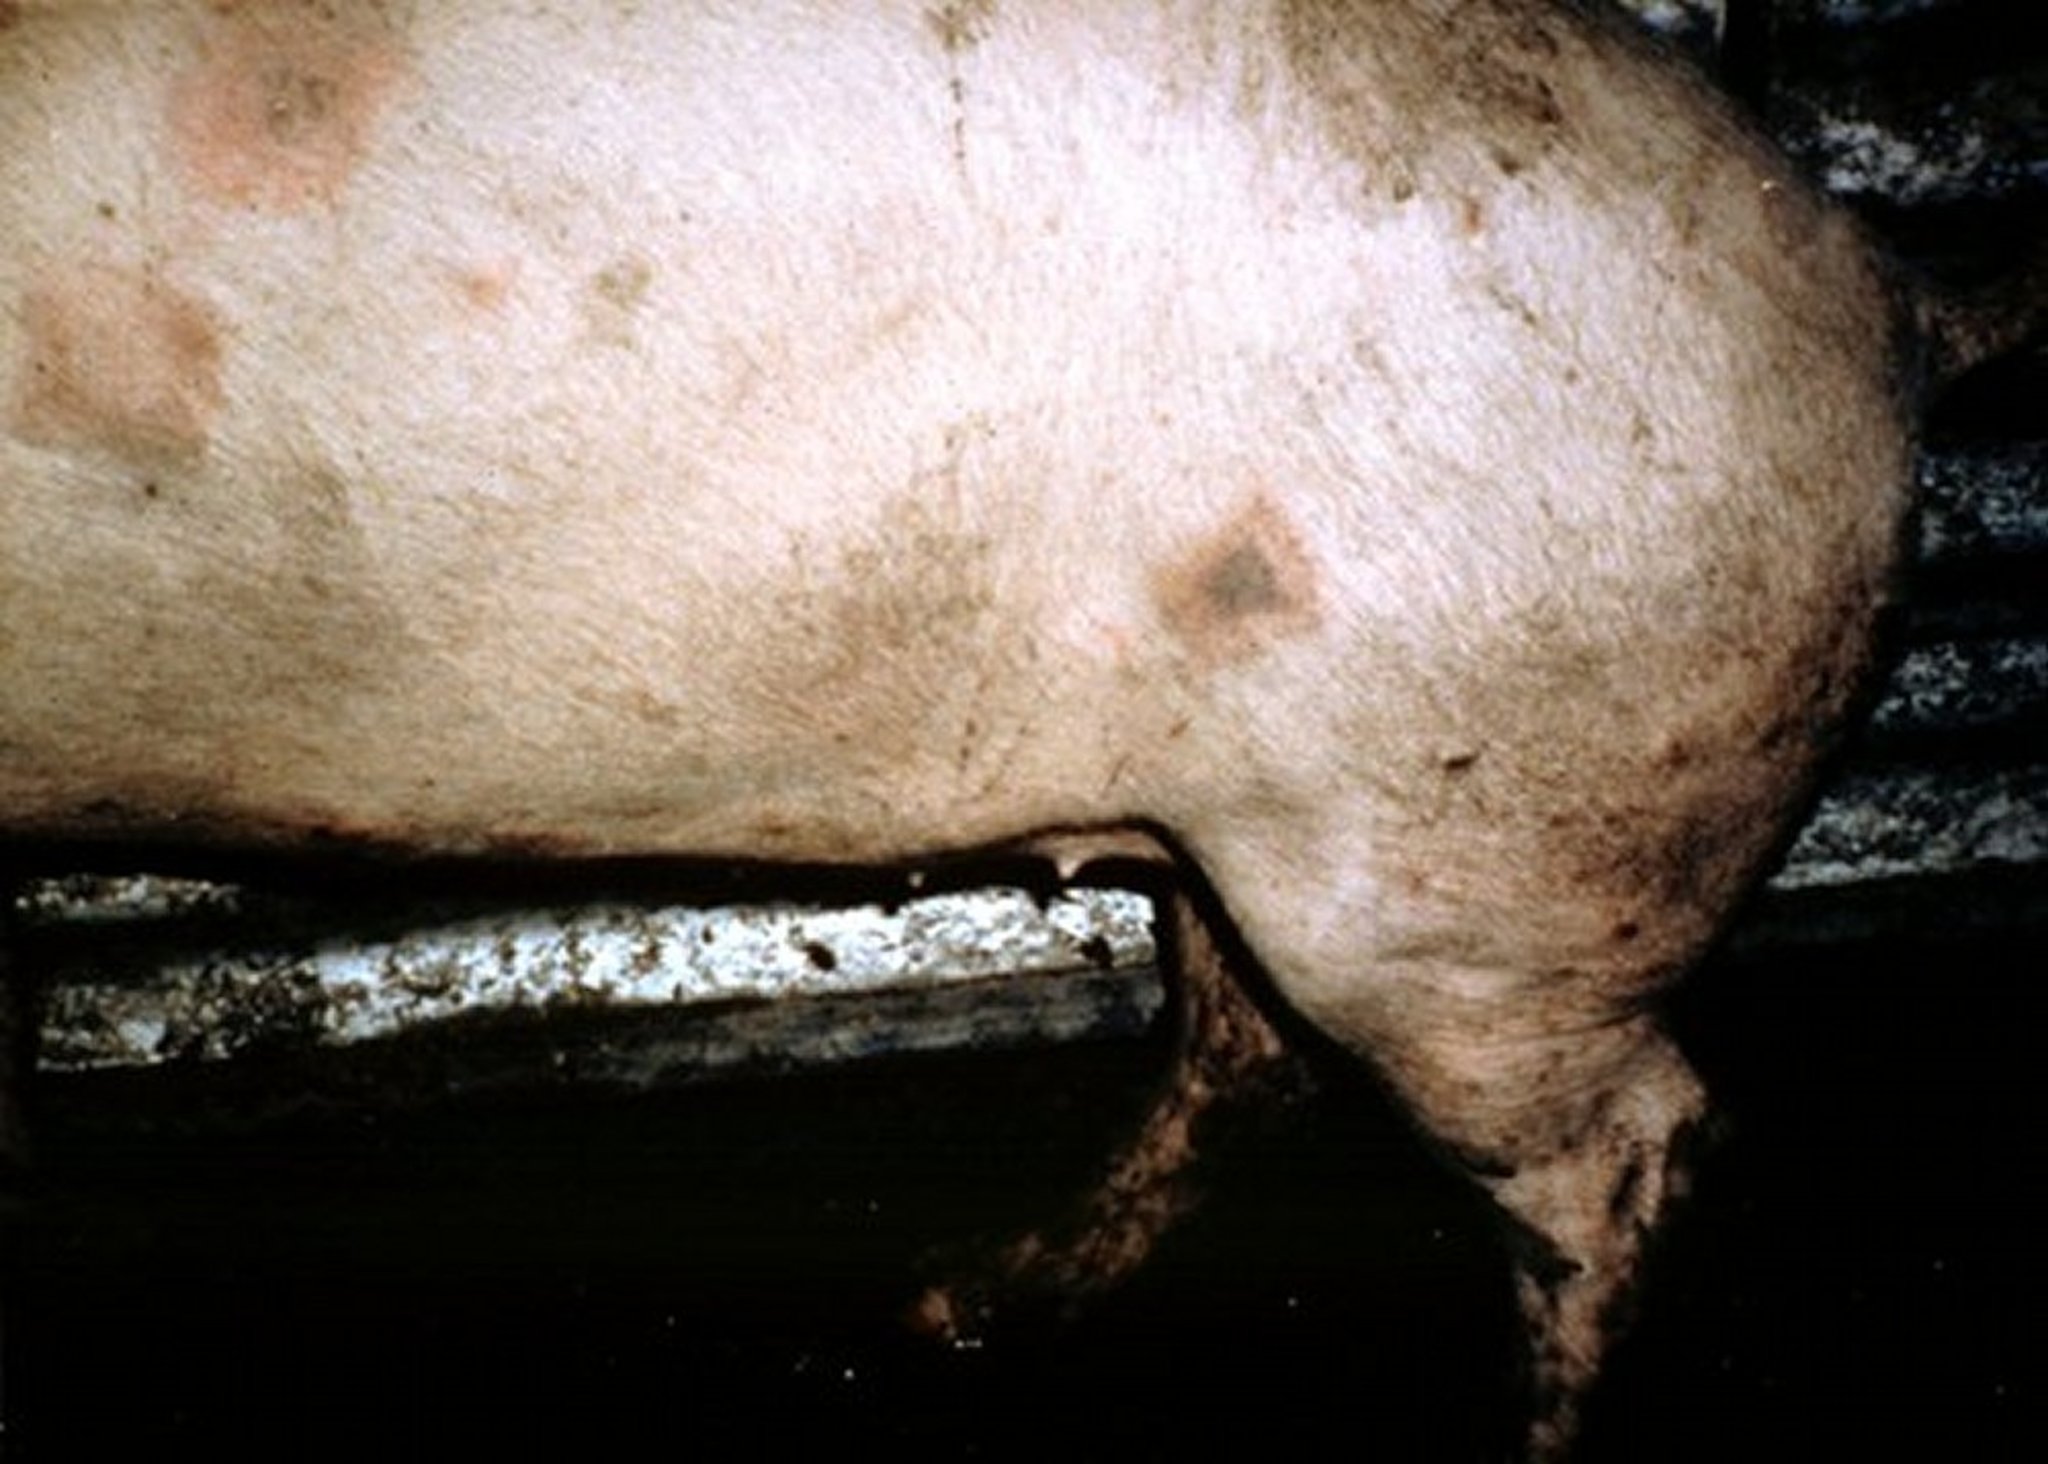 Acute swine erysipelas